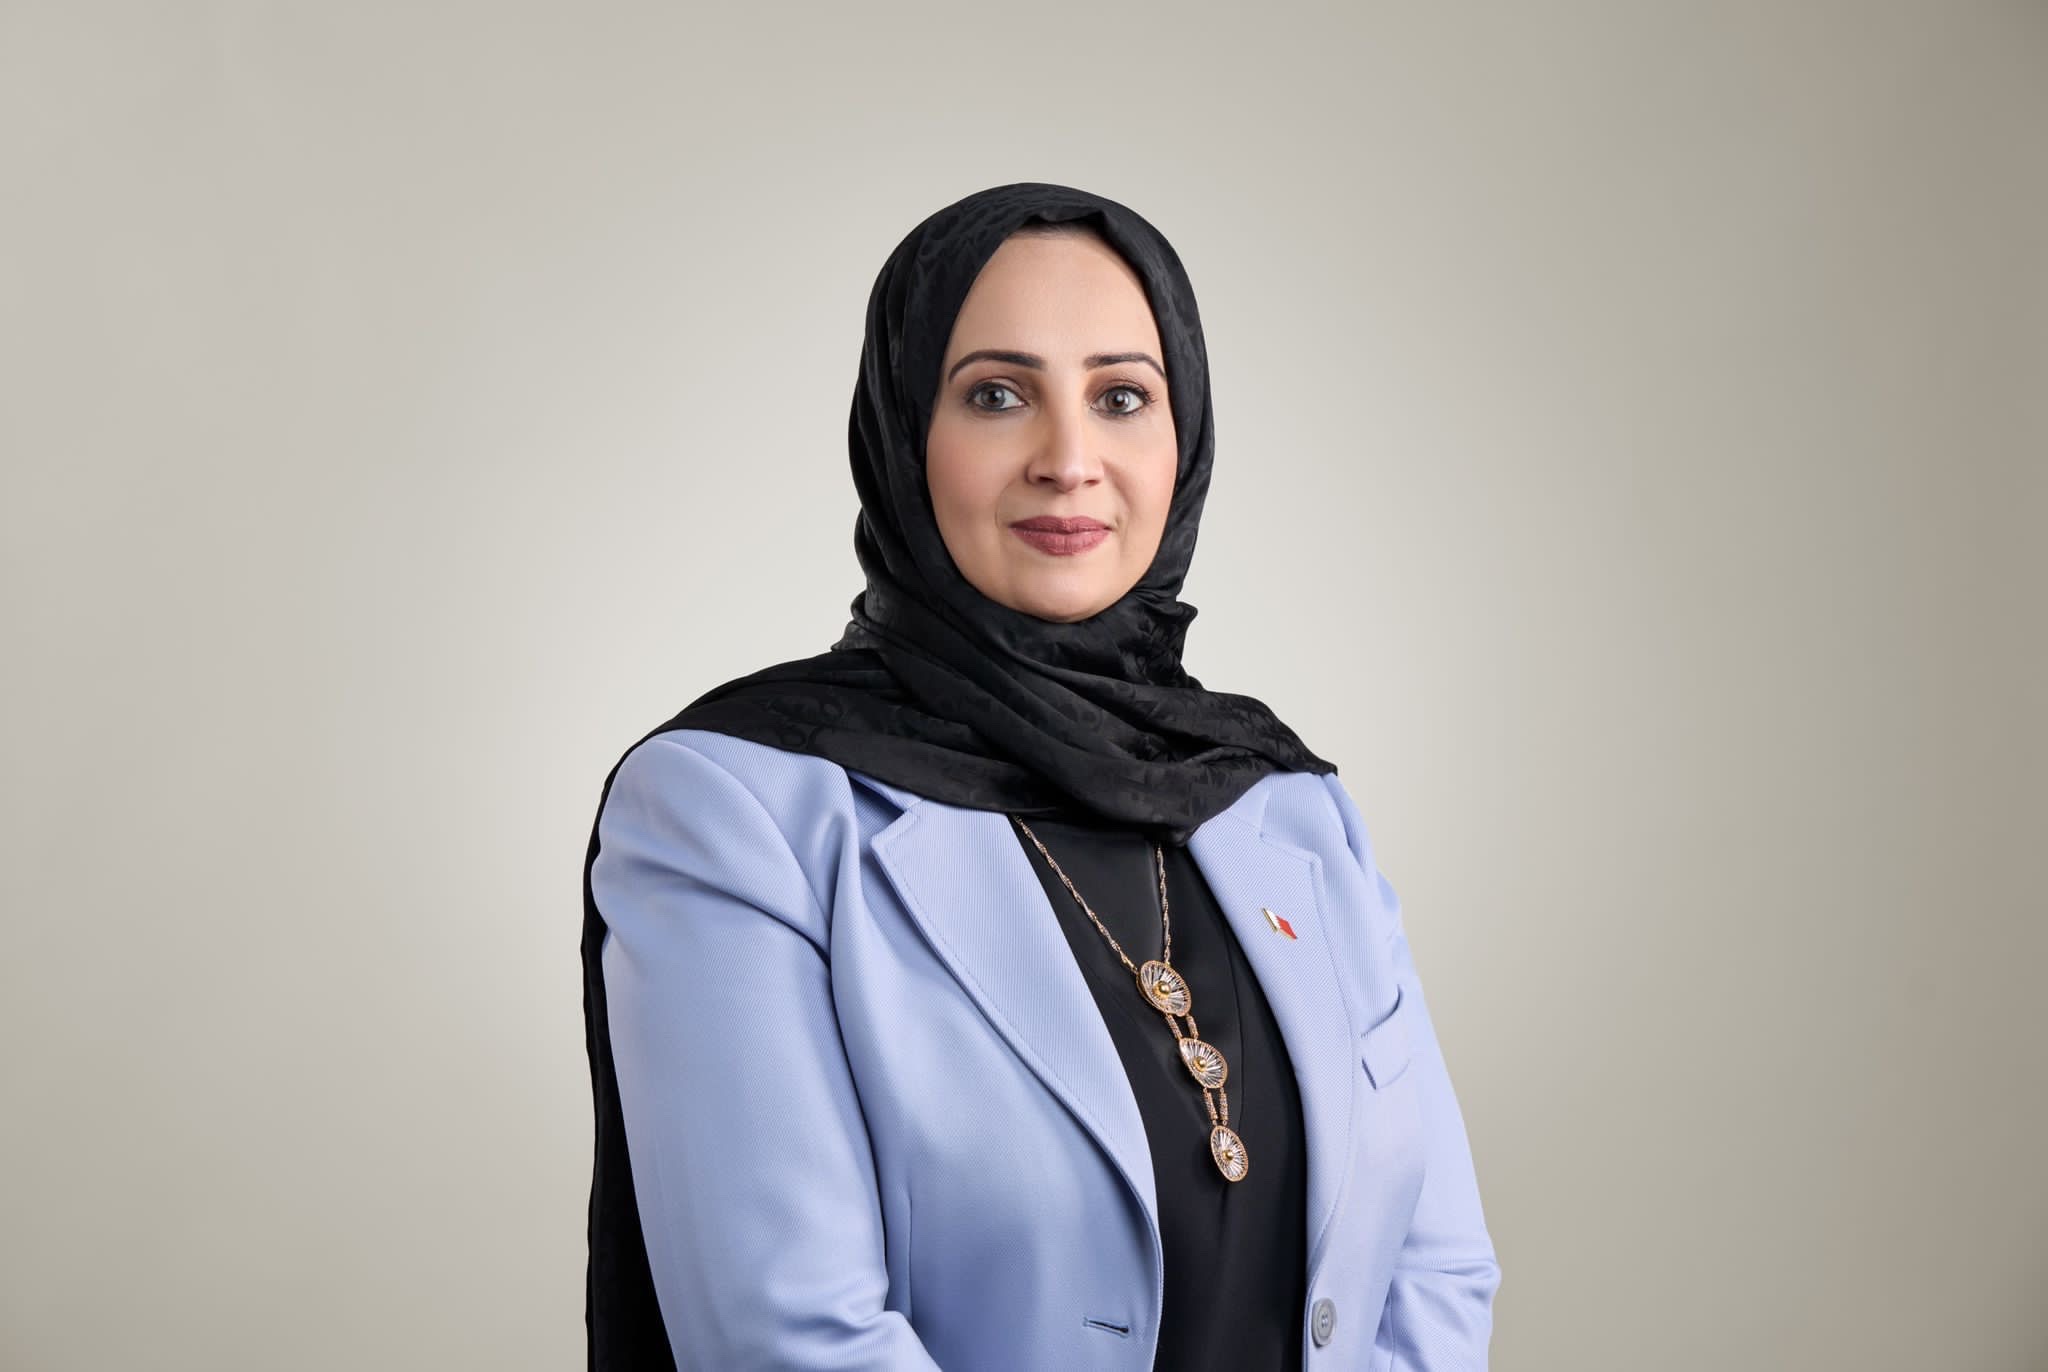 انتخاب وزيرة الصحة رئيساً للجنة الرئيسية (أ) لجمعية الصحة العالمية في دورتها السادسة والسبعون